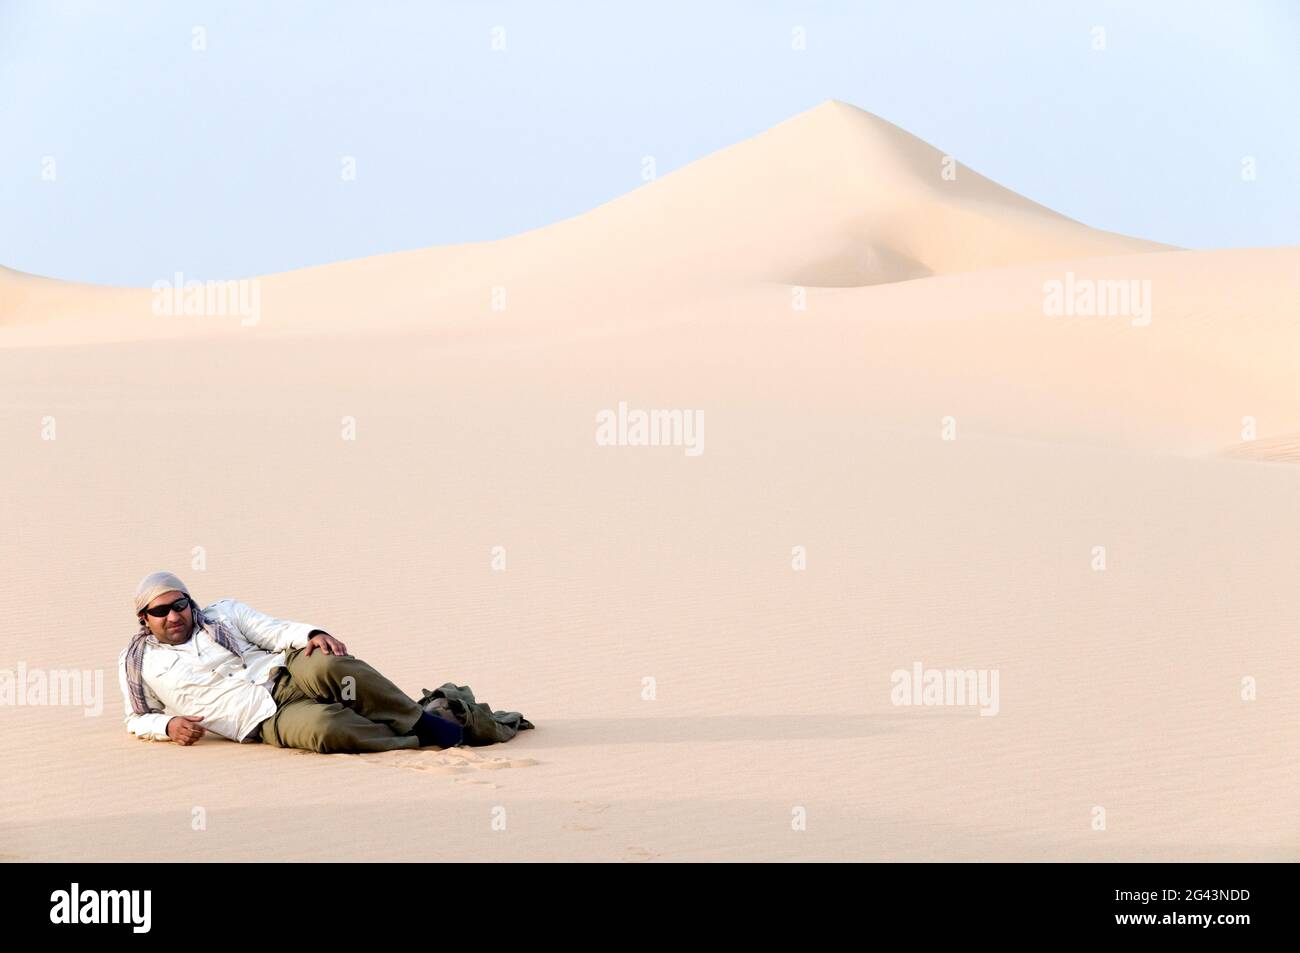 Un guide du désert du Sahara égyptien a un repos sur une dune de sable dans la région de la Grande mer de sable du désert de Wester, dans le sud-ouest de l'Égypte. Banque D'Images